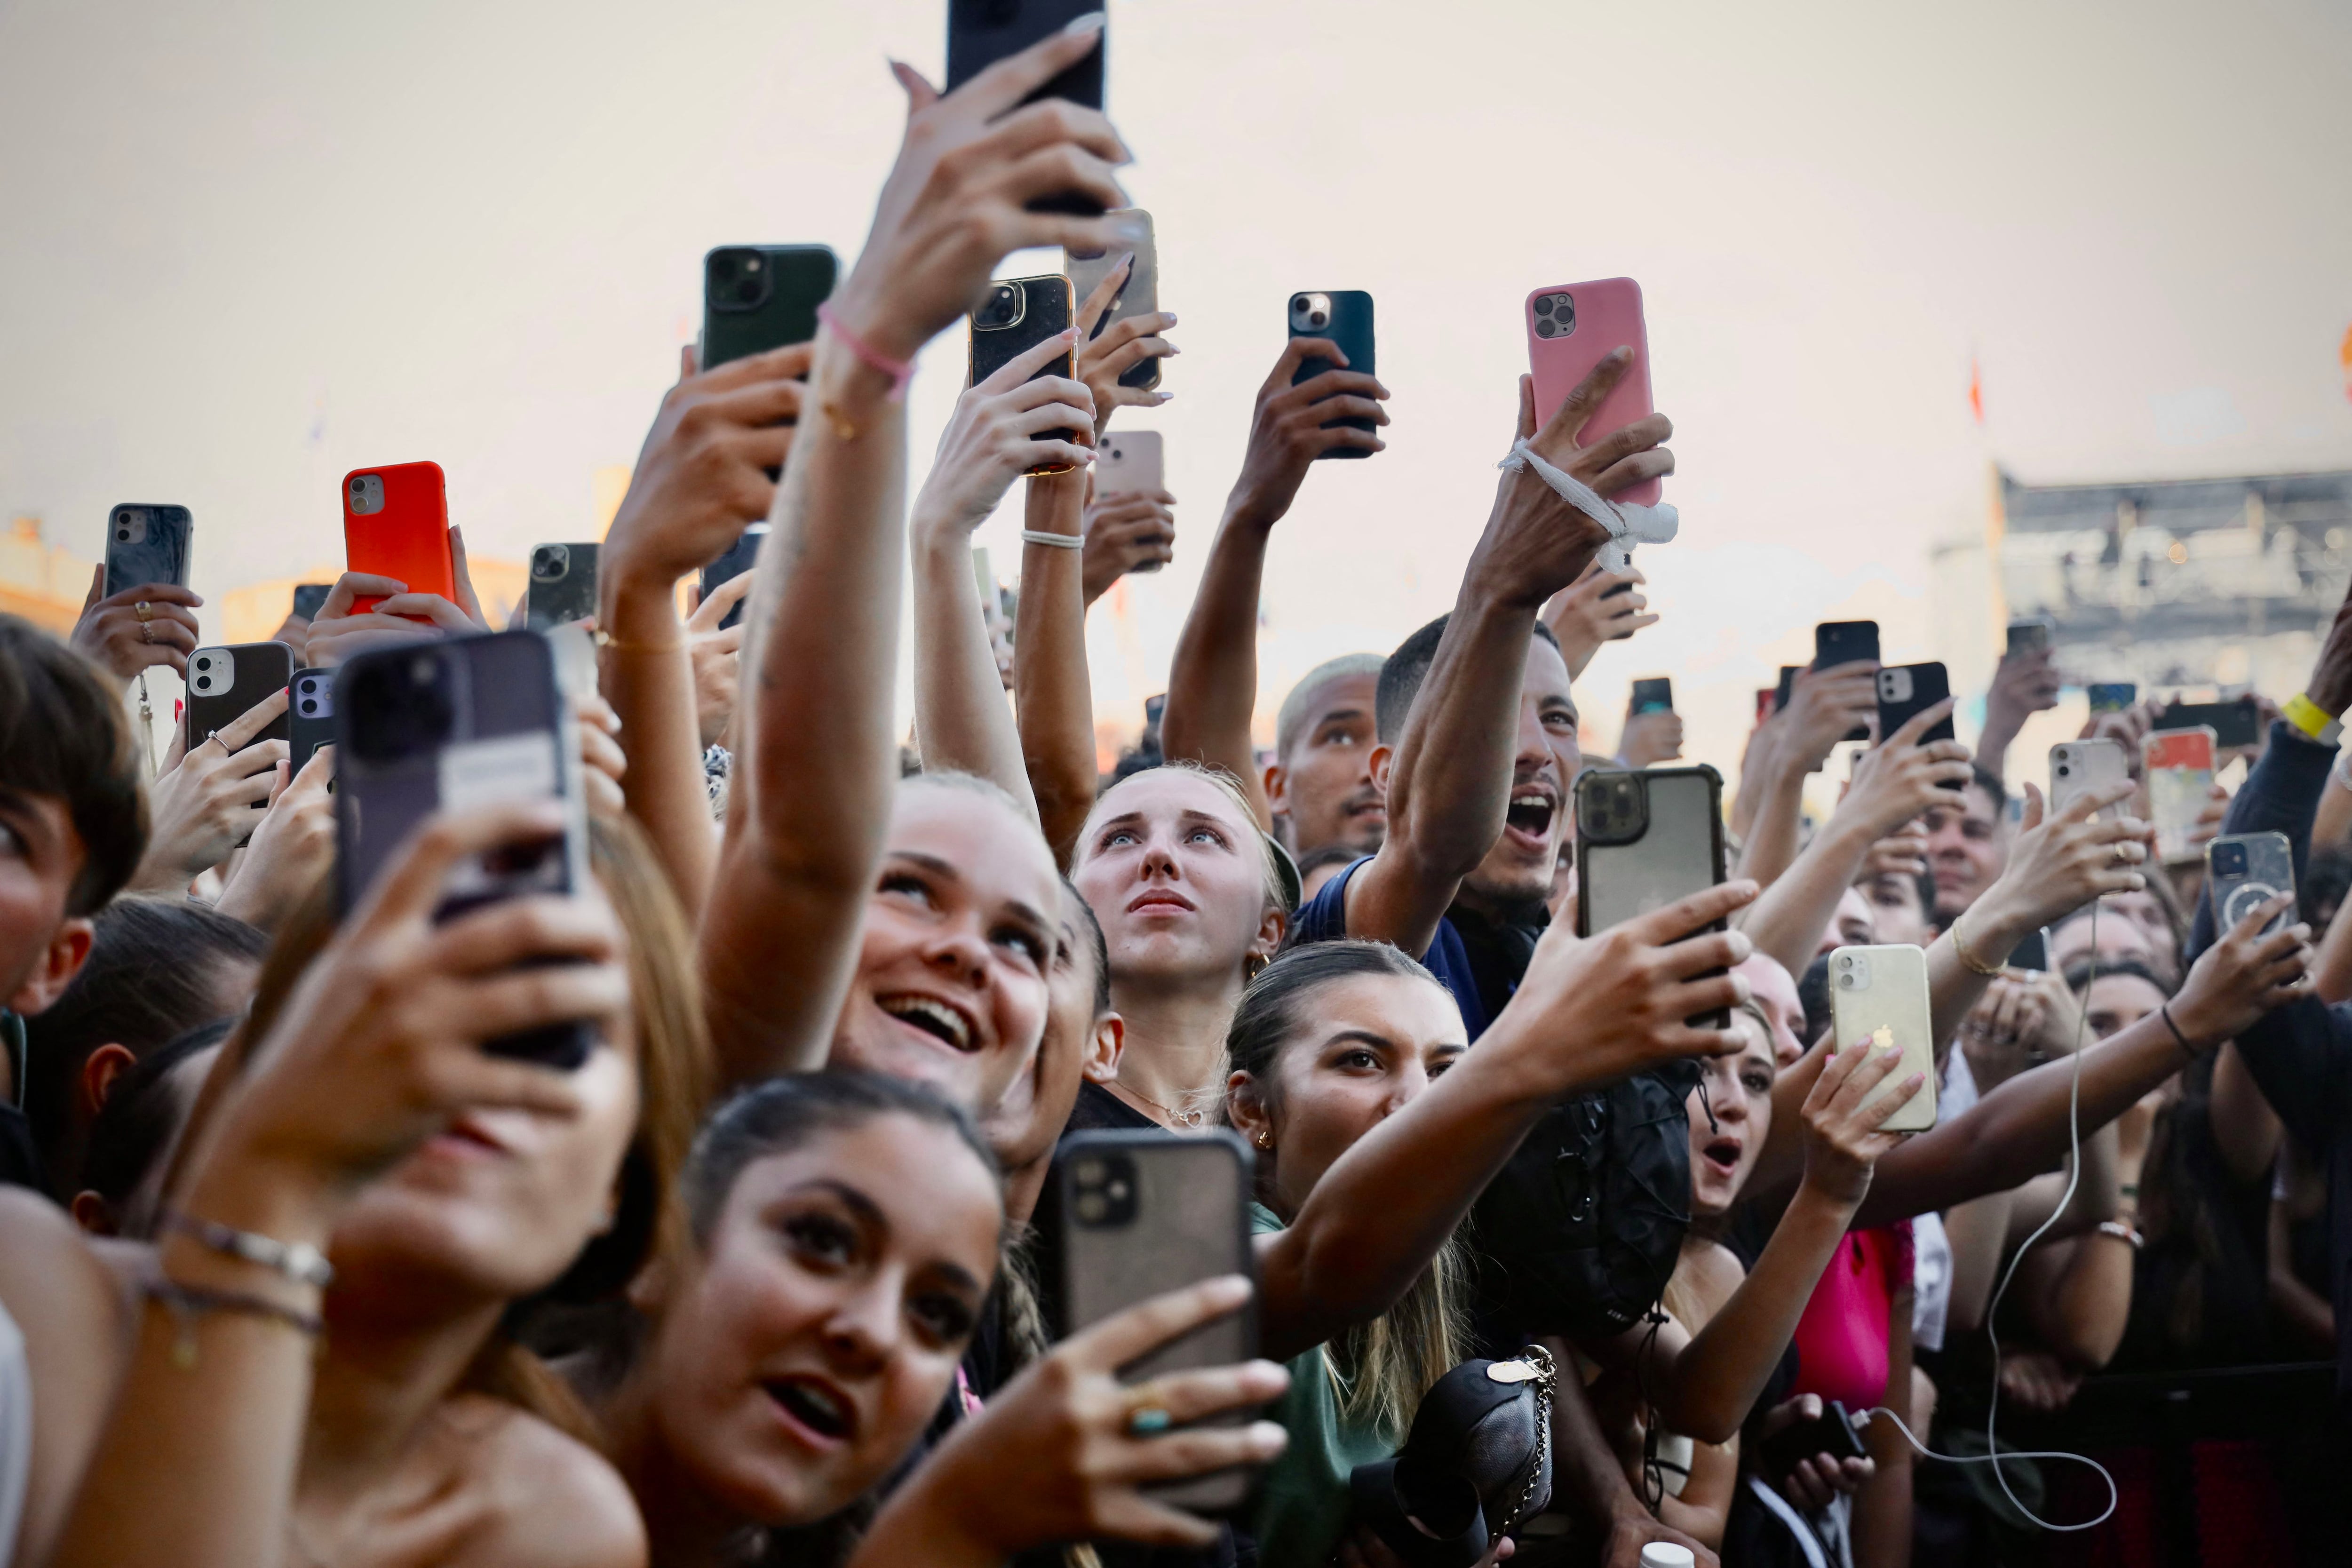 Esta época se caracteriza por el uso del smartphone como medio de entretenimiento y actividad social. (Foto: AFP)